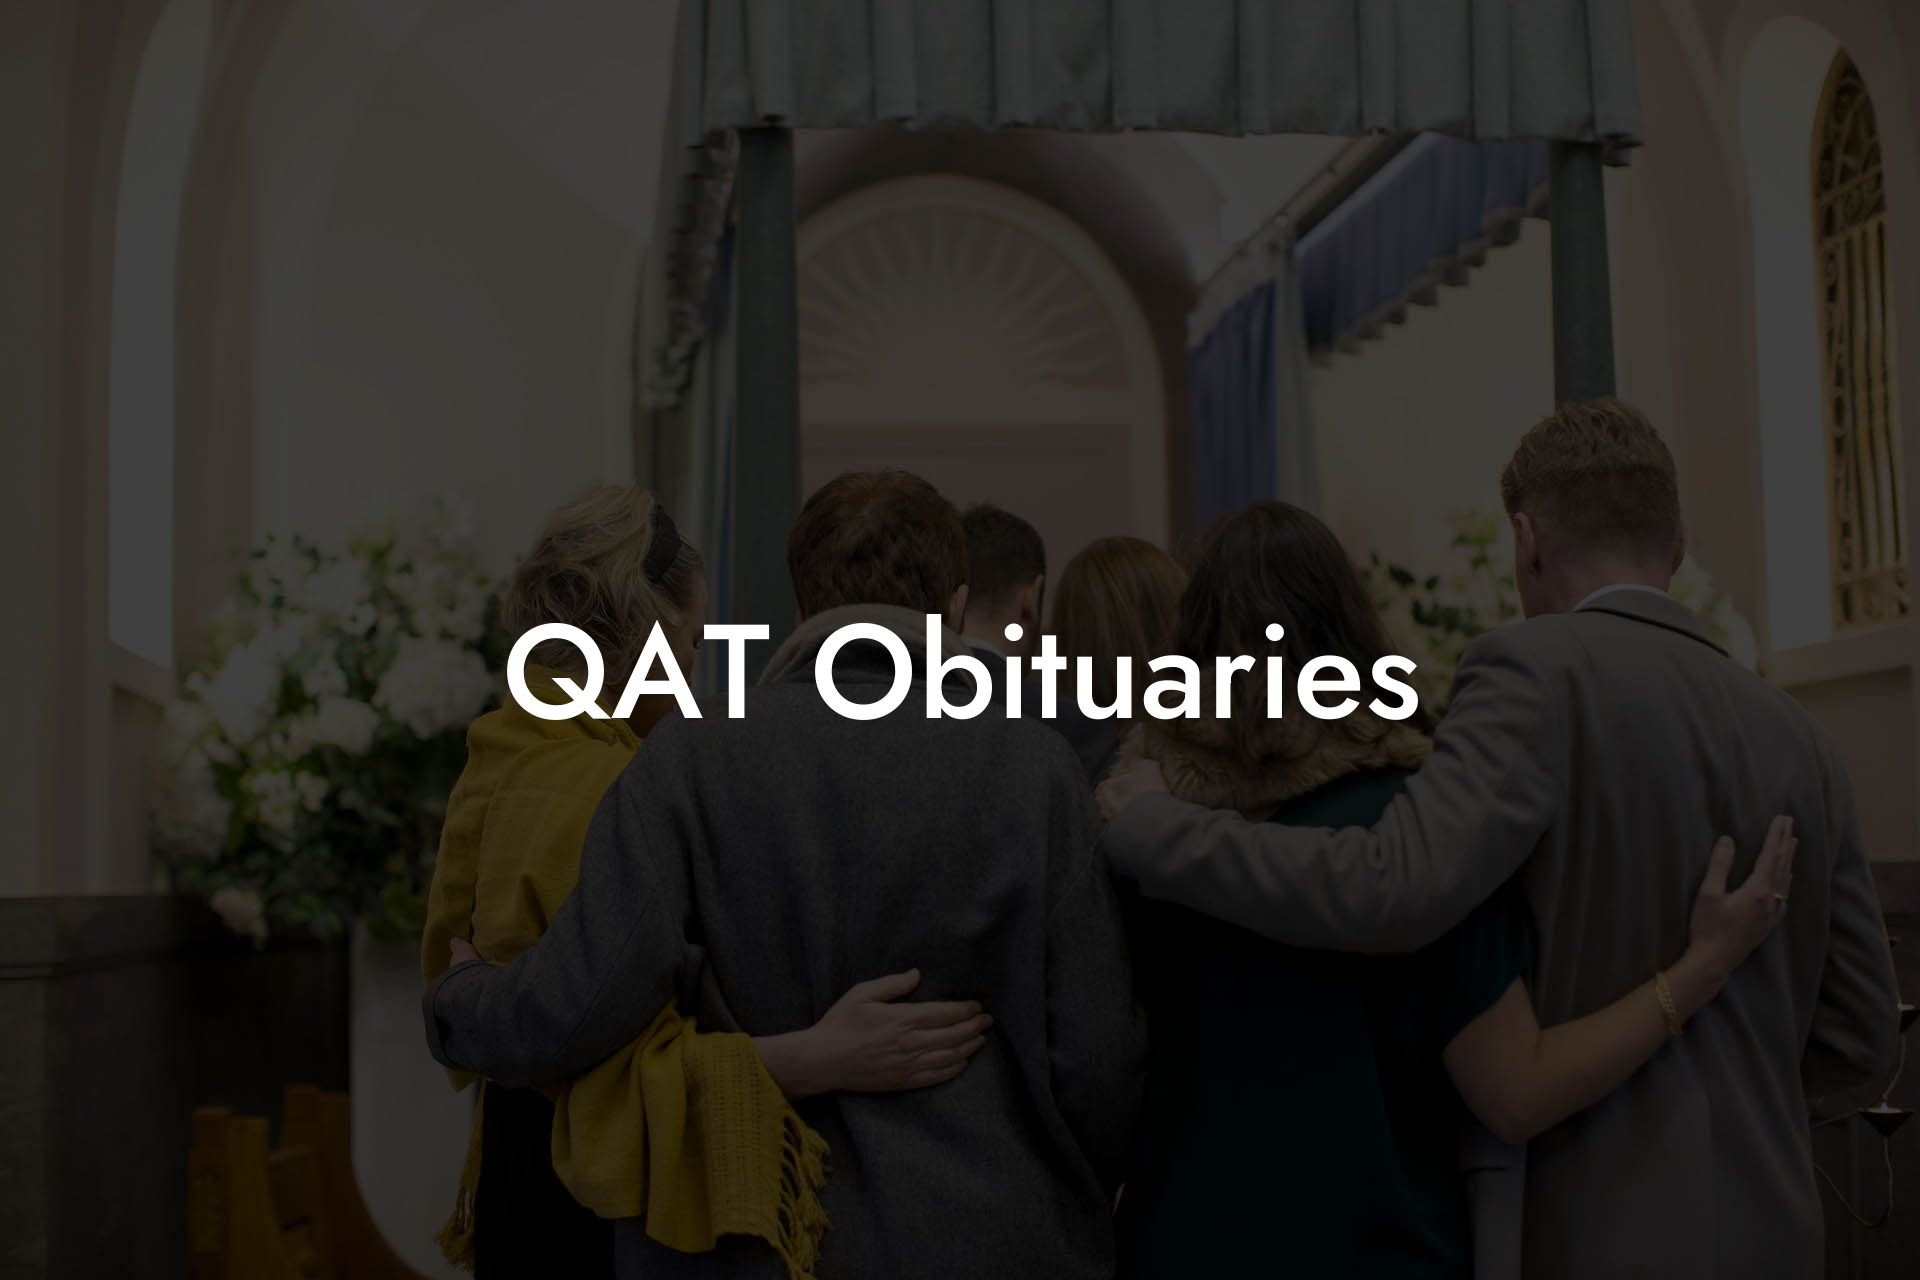 QAT Obituaries